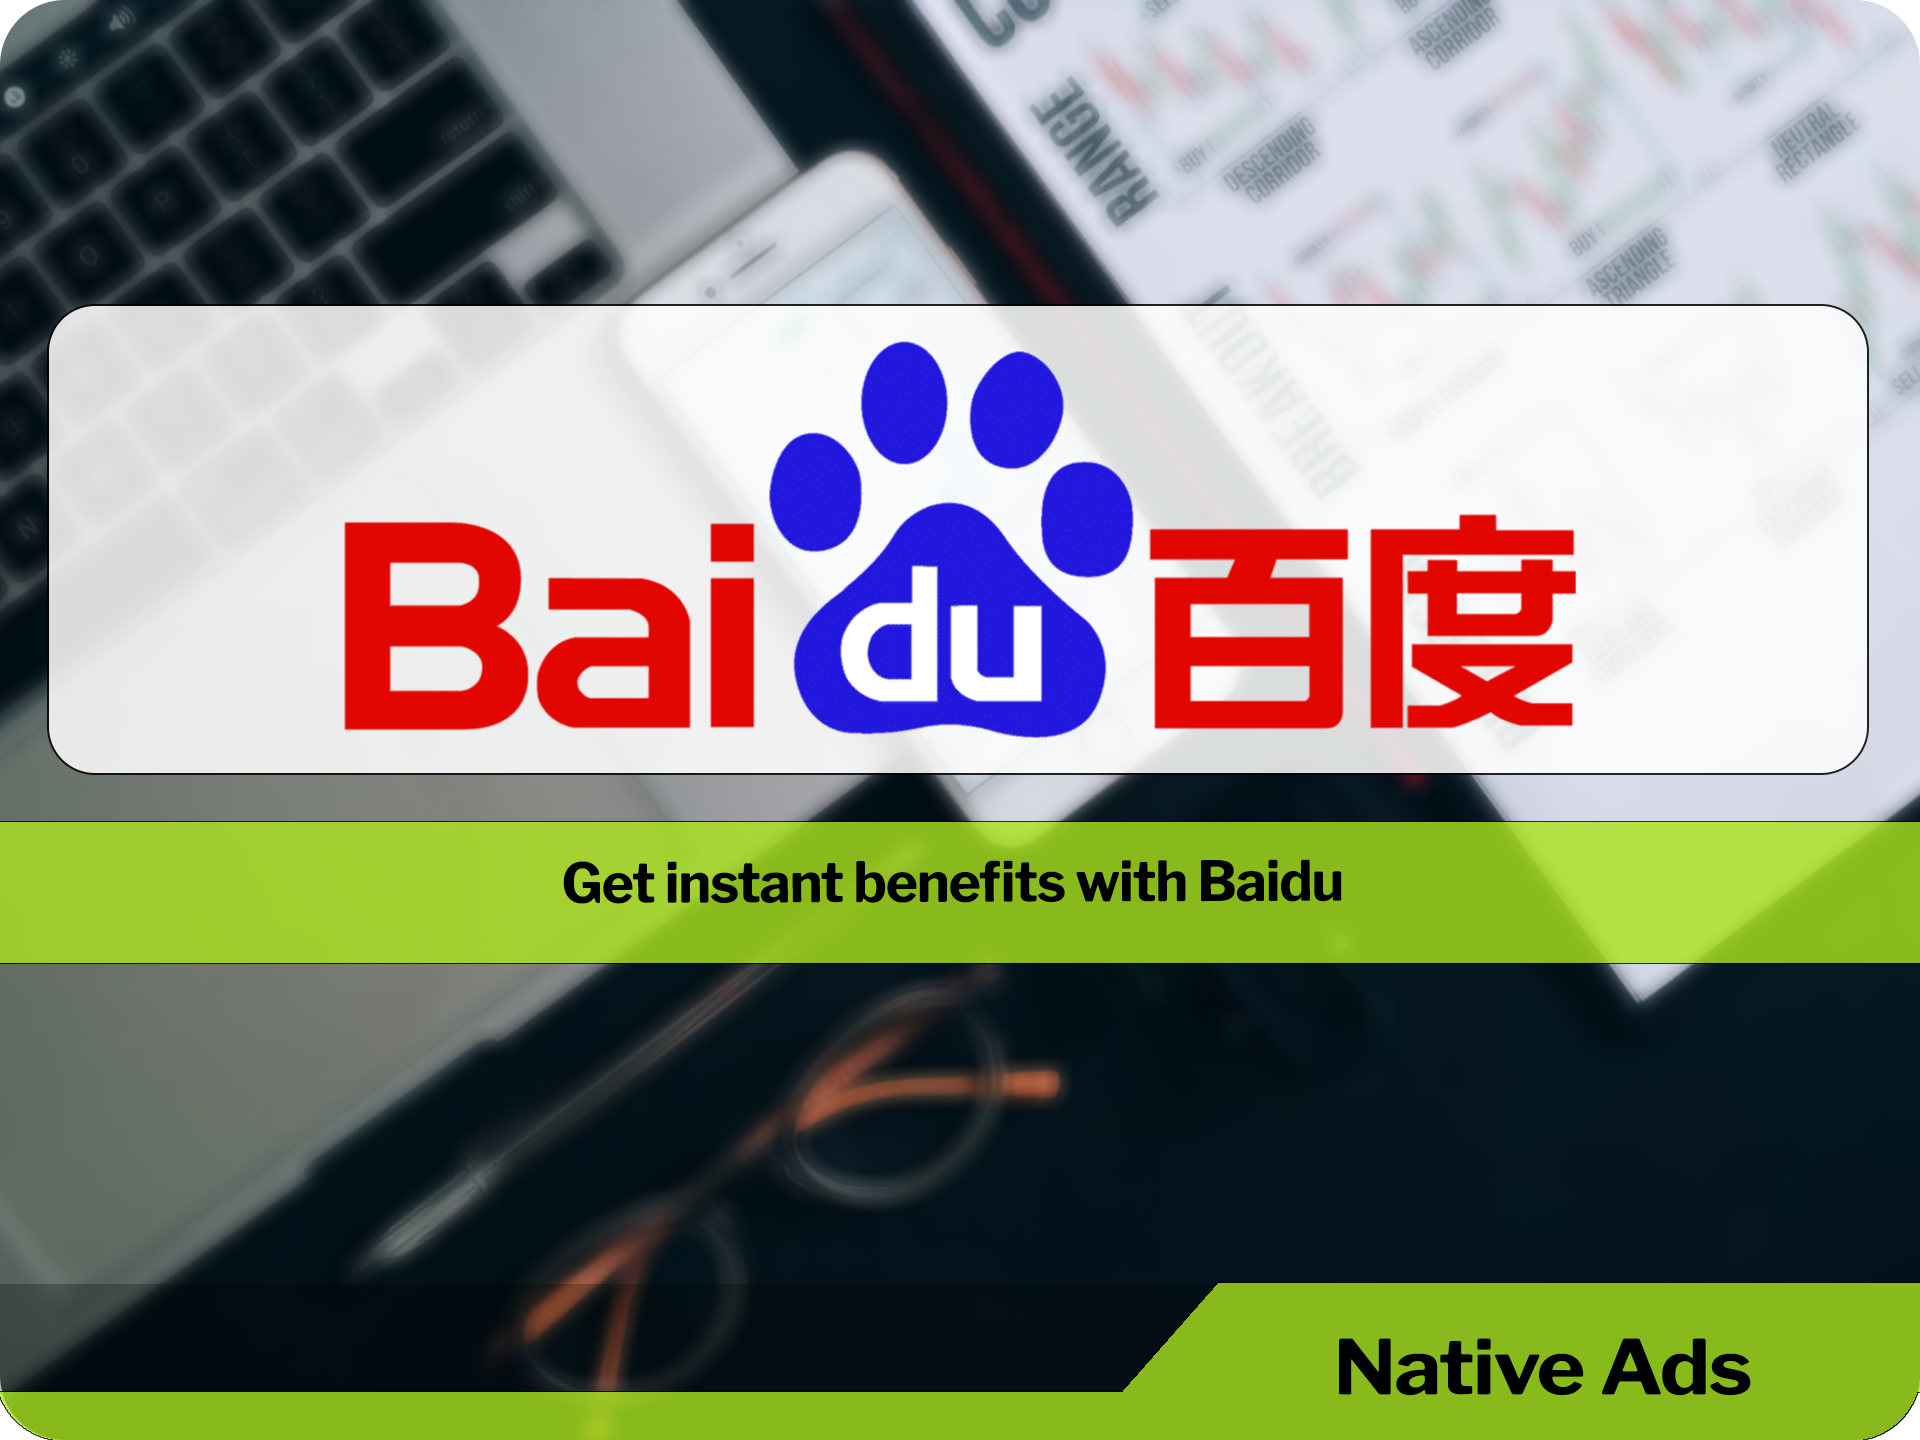 Baidu from China